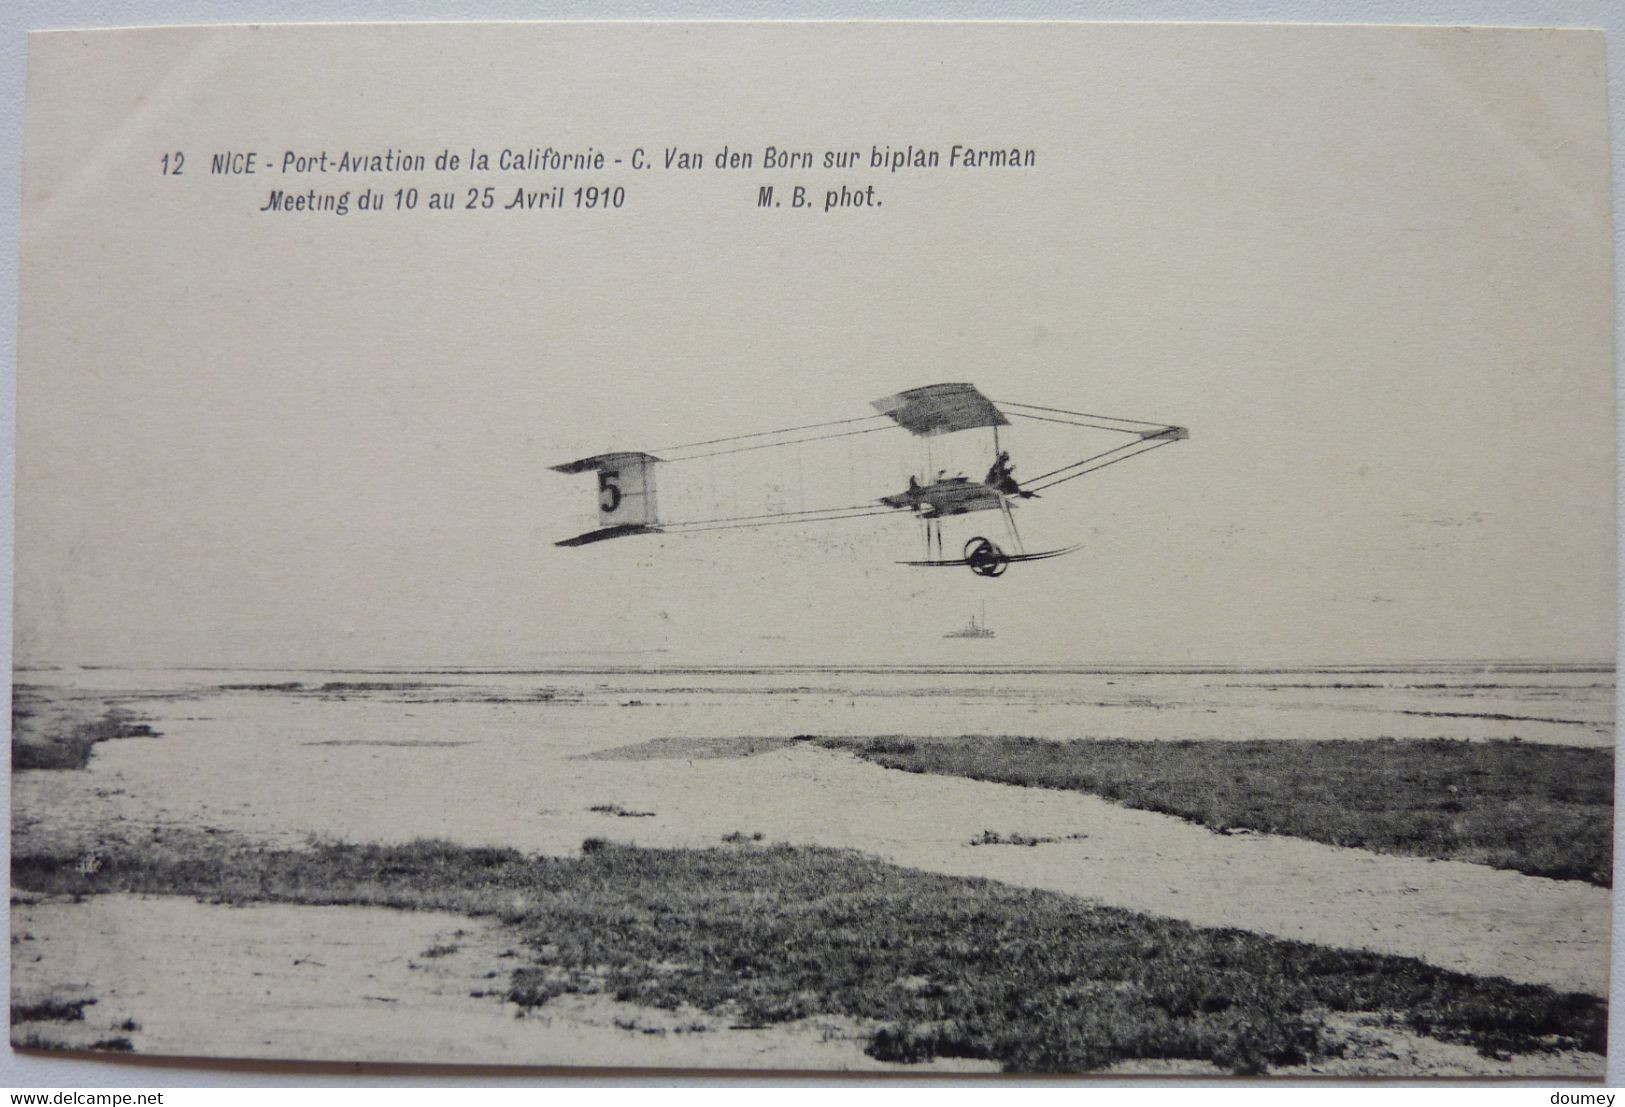 C. VAN DEN BORN SUR BIPLAN FARMAN - MEETING DU 10 AU 25 AVRIL 1910 - PORT-AVIATION DE LA CALIFORNIE - NICE - Transport Aérien - Aéroport